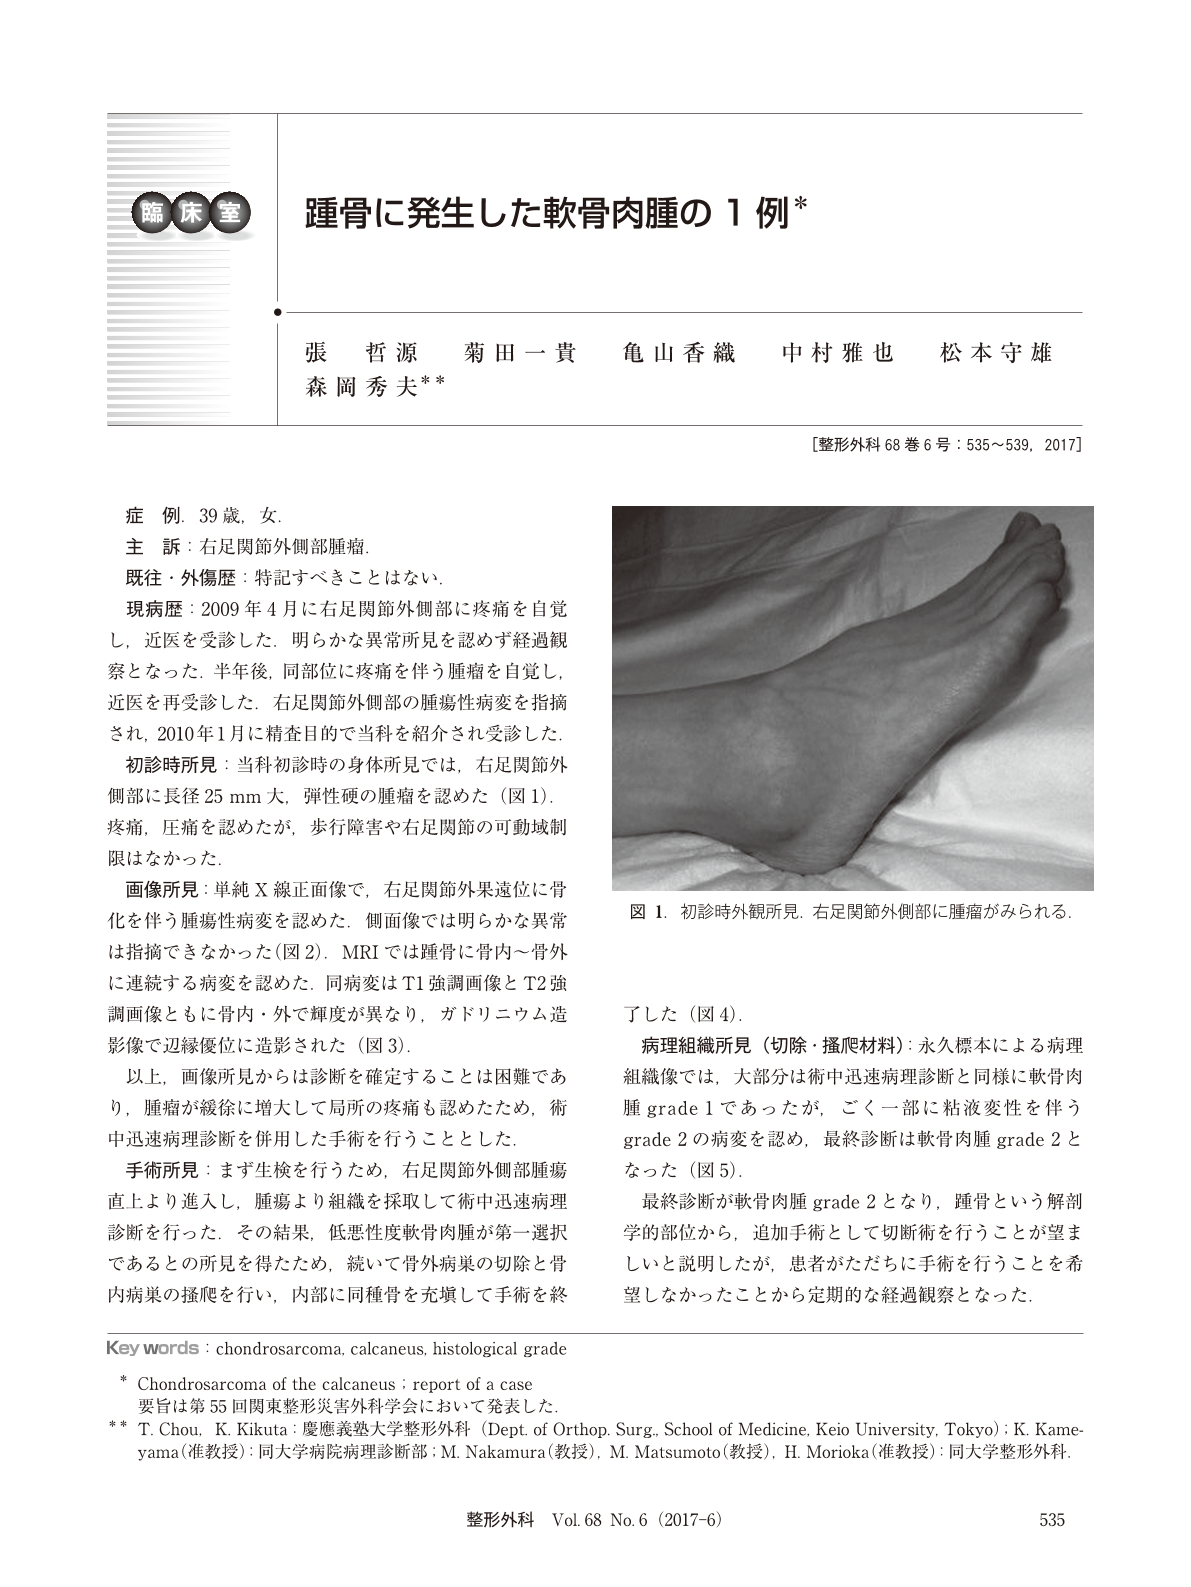 踵骨に発生した軟骨肉腫の1例 臨床雑誌整形外科 68巻6号 医書 Jp